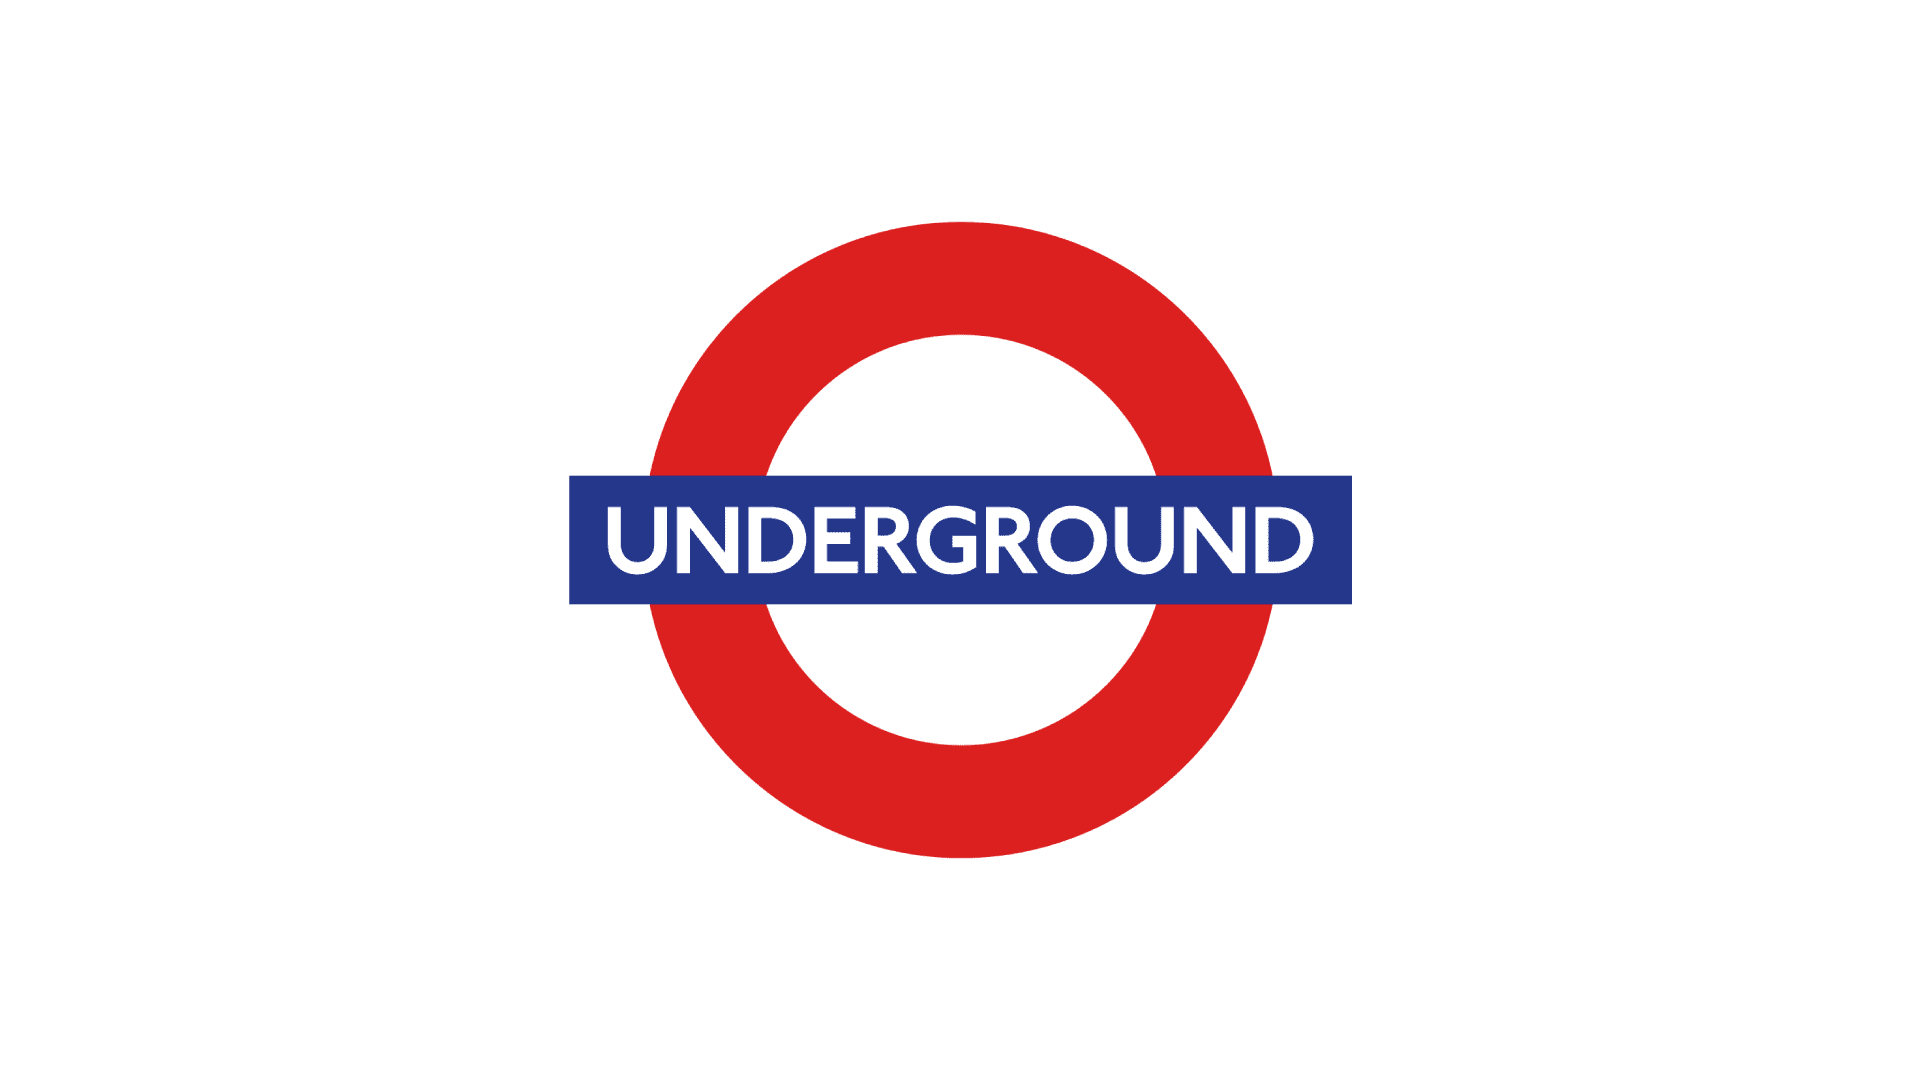 London Underground works with CADS